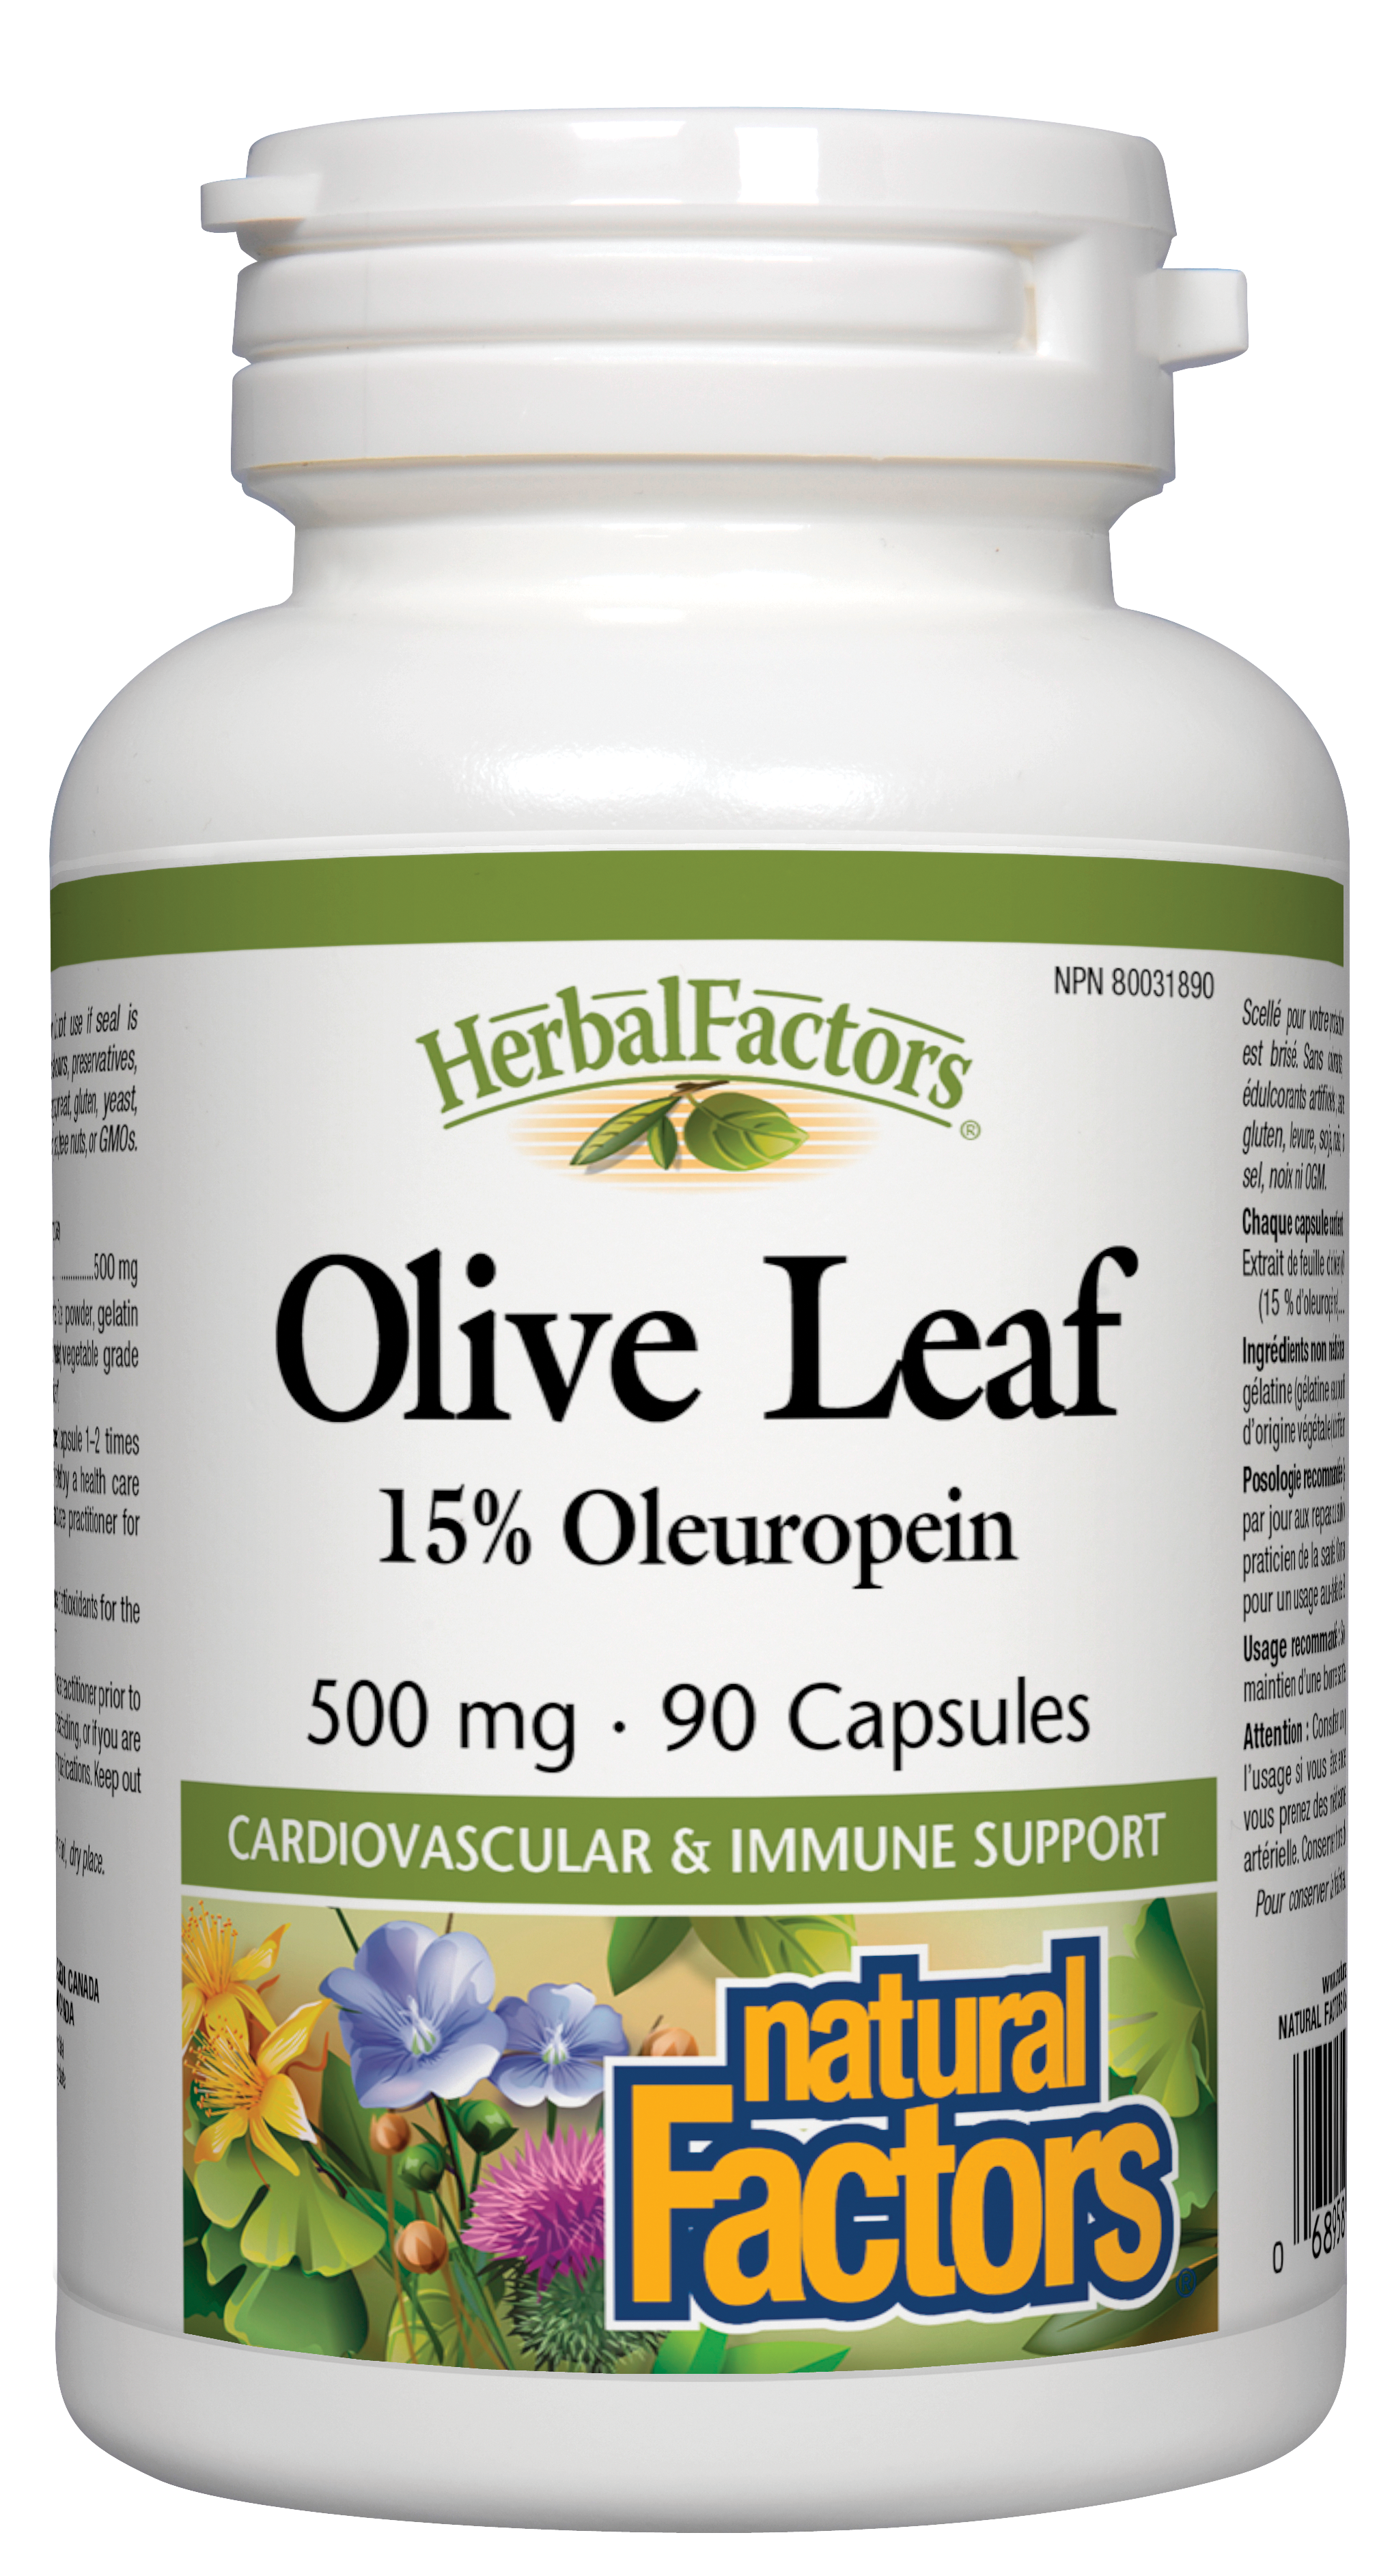 Natural Factors Olive Leaf HerbalFactors 90 Capsules